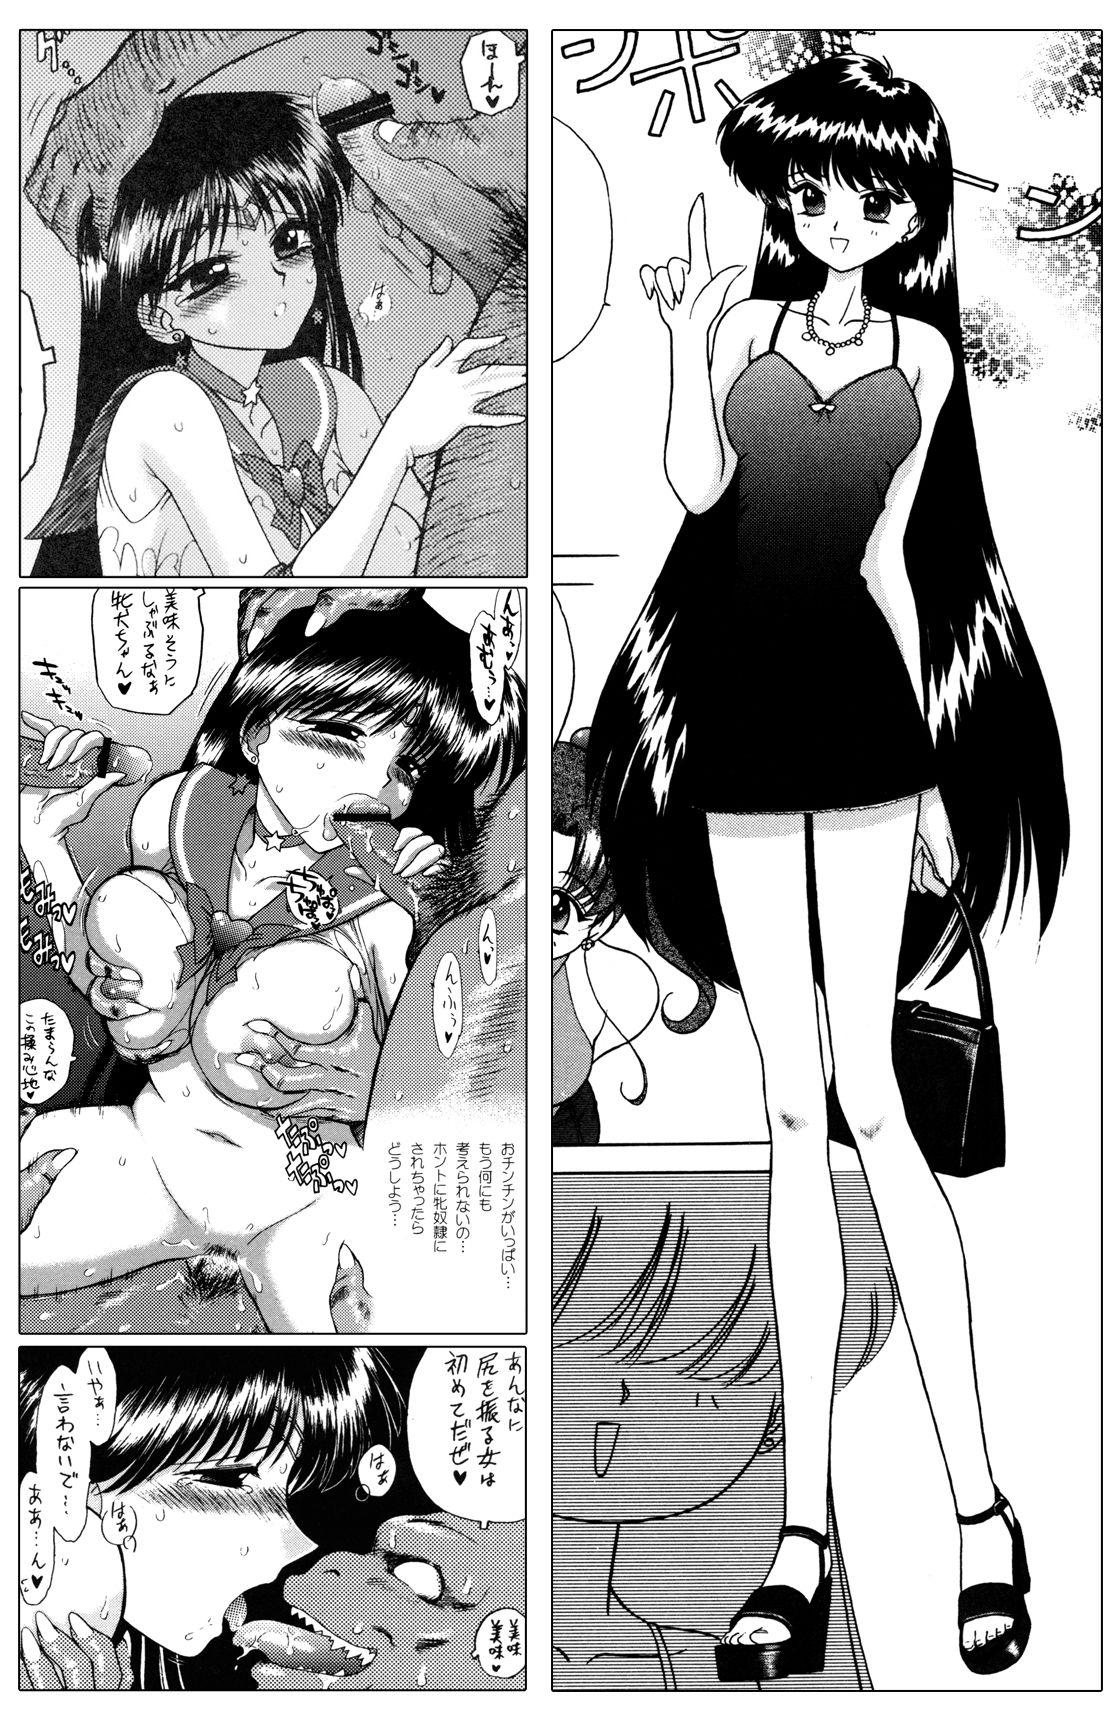 Weird QUEEN OF SPADES - 黑桃皇后 - Sailor moon Ftvgirls - Page 12